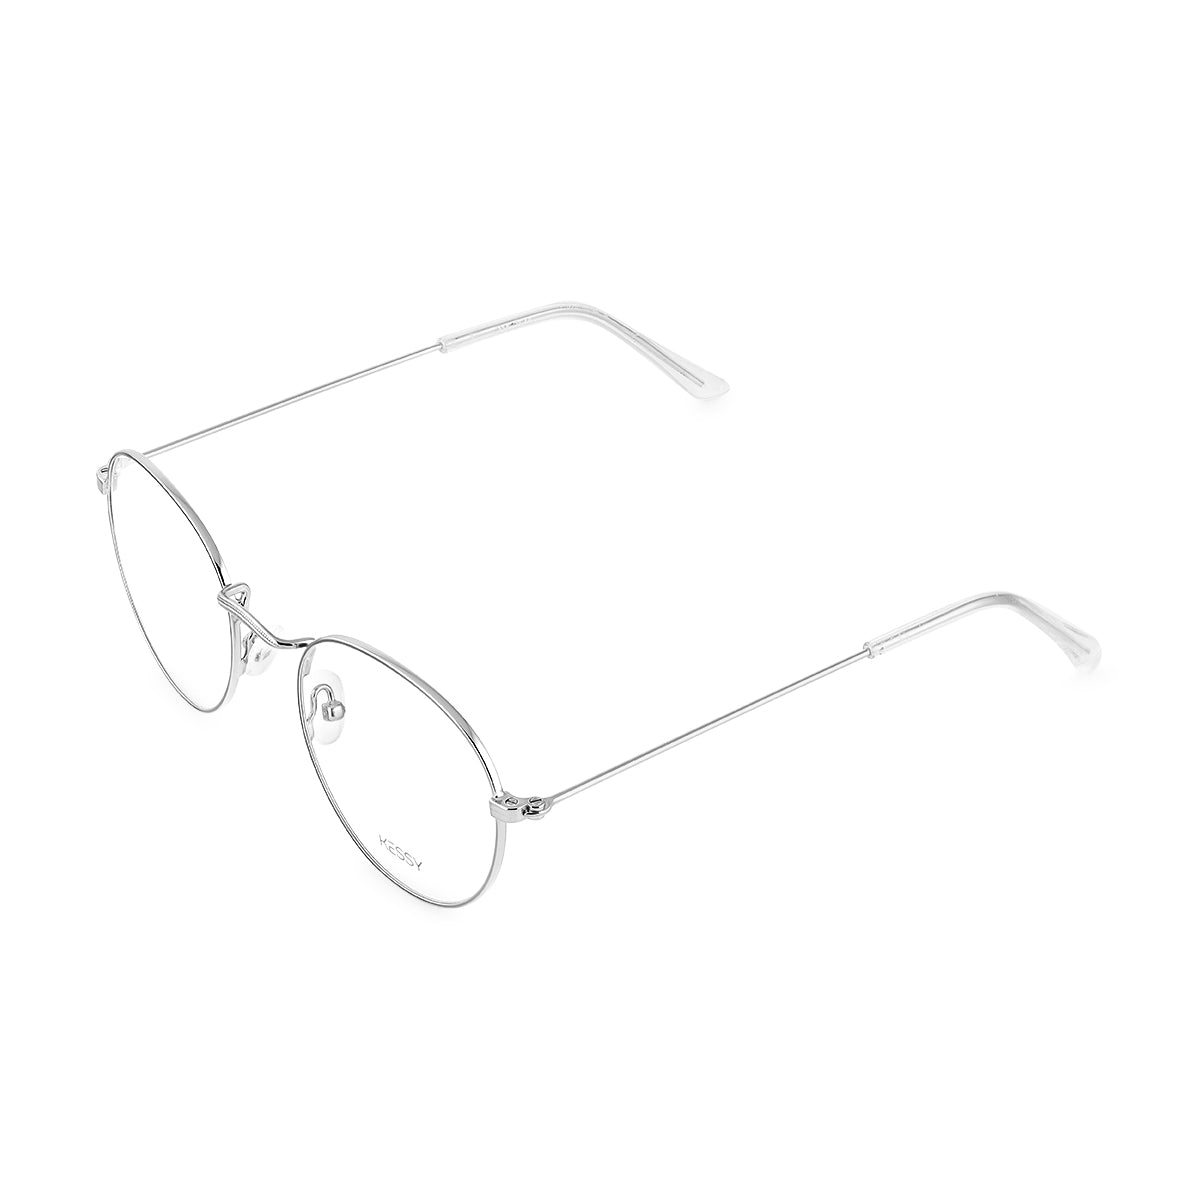 Óculos de Grau Kessy 152